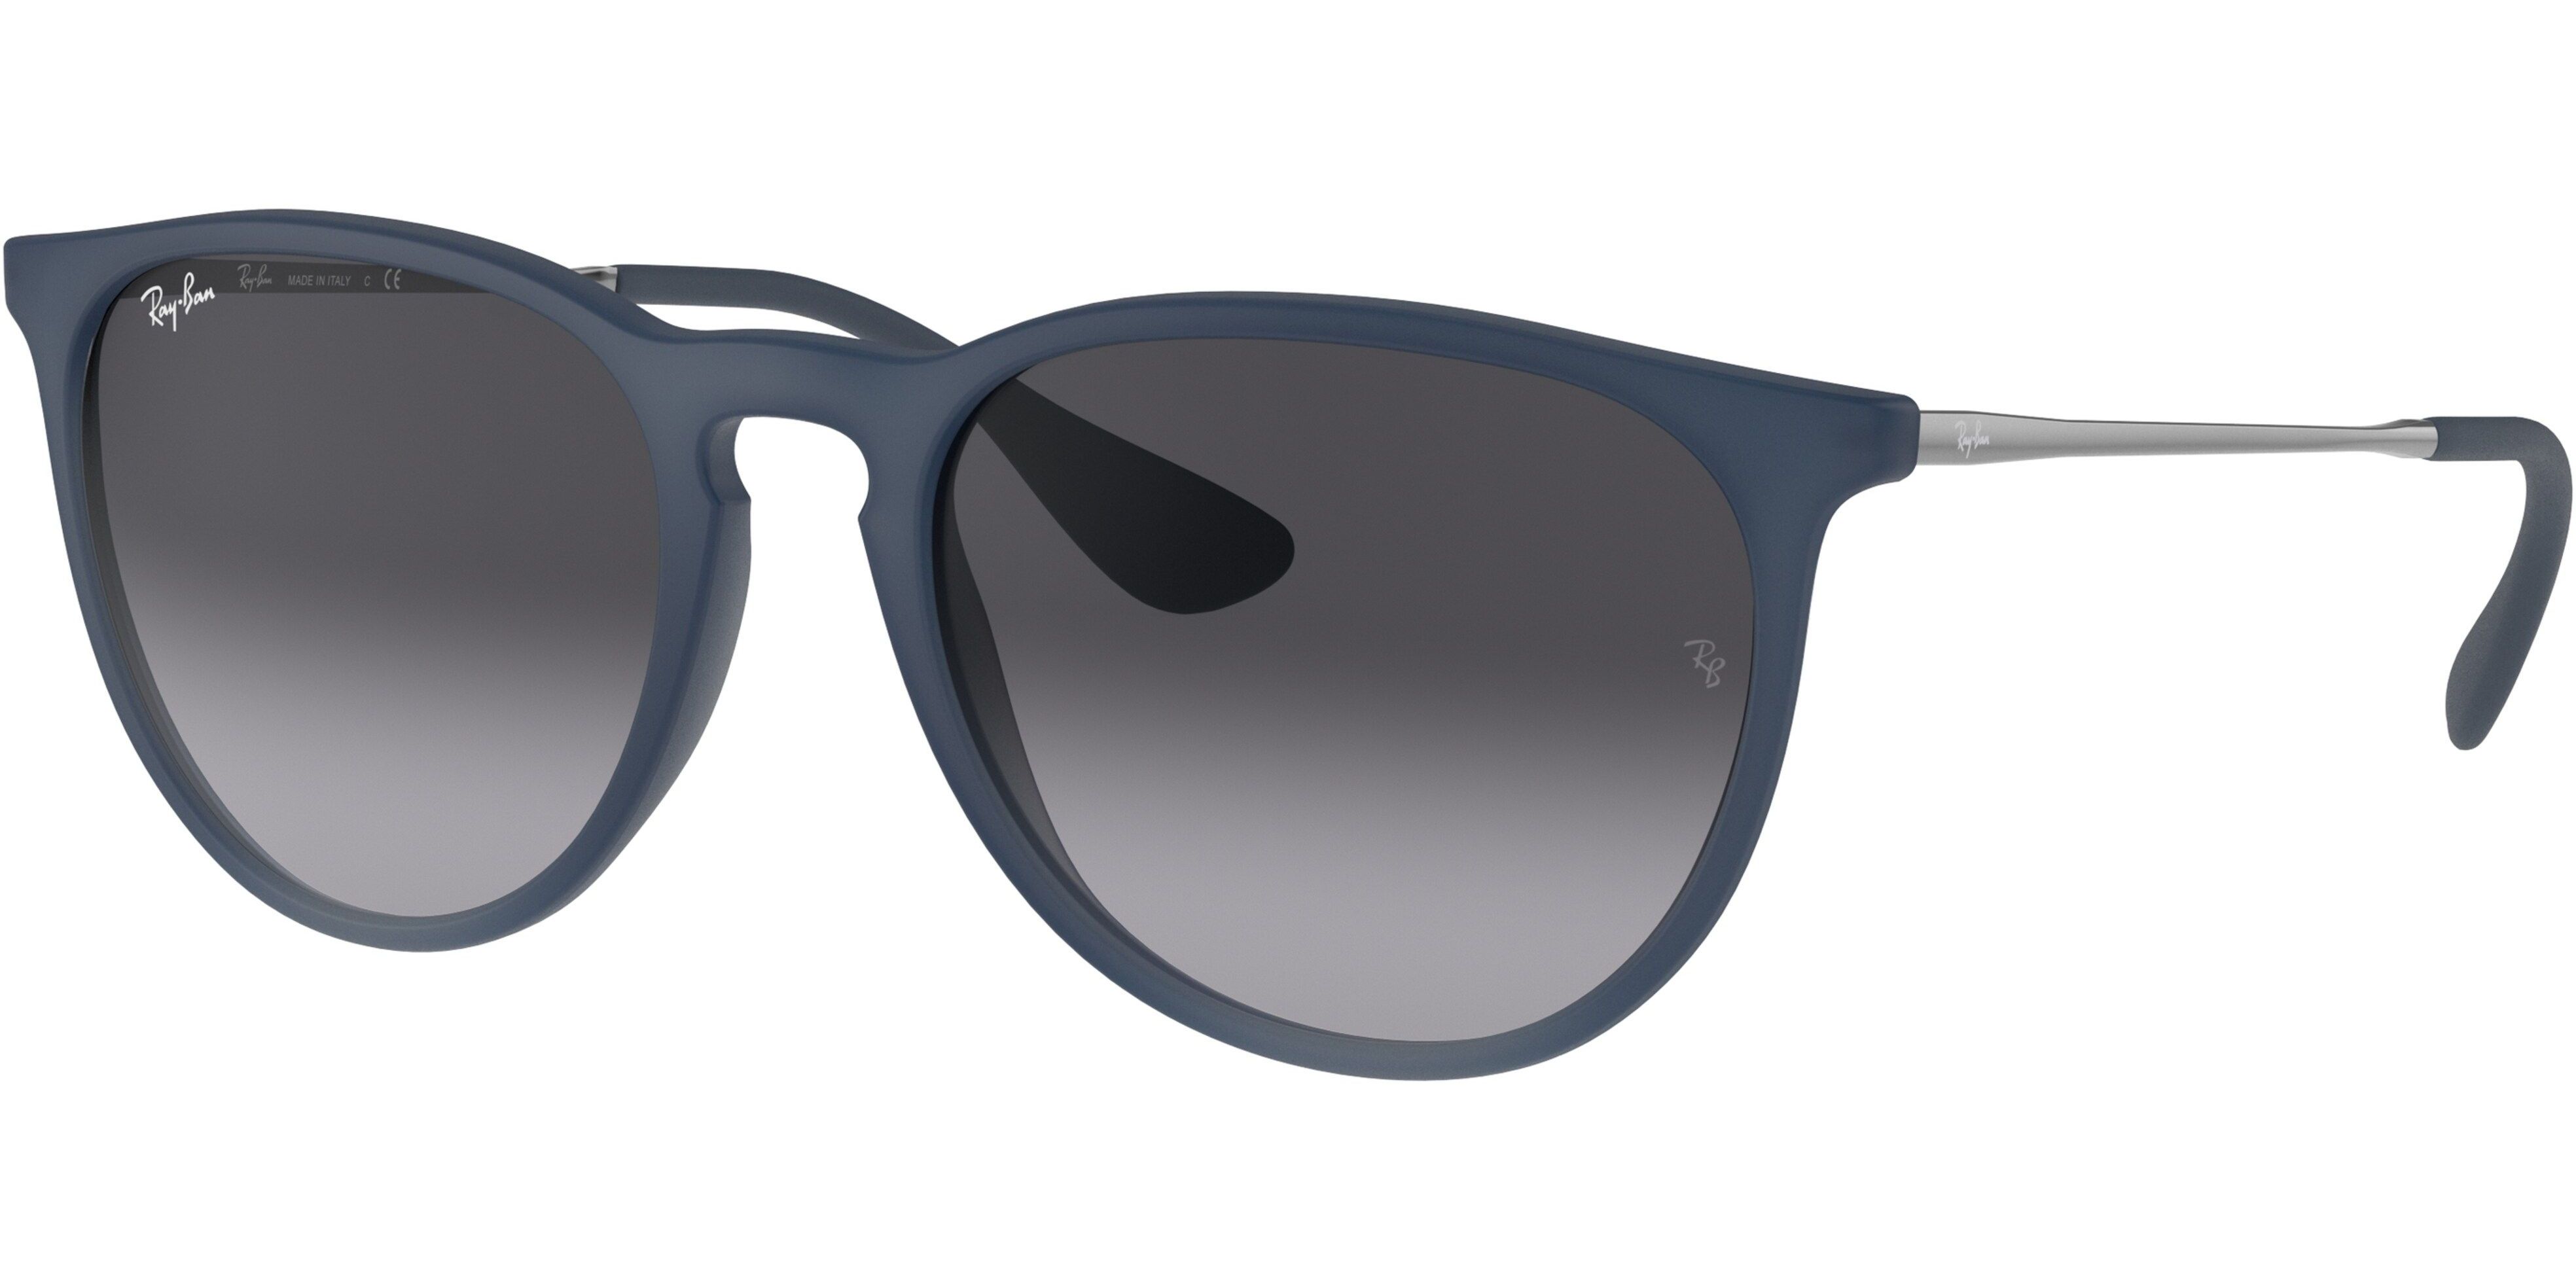 Sluneční brýle Ray-Ban® model 4171, barva obruby modrá mat šedá, čočka šedá gradál, kód barevné varianty 60028G. 